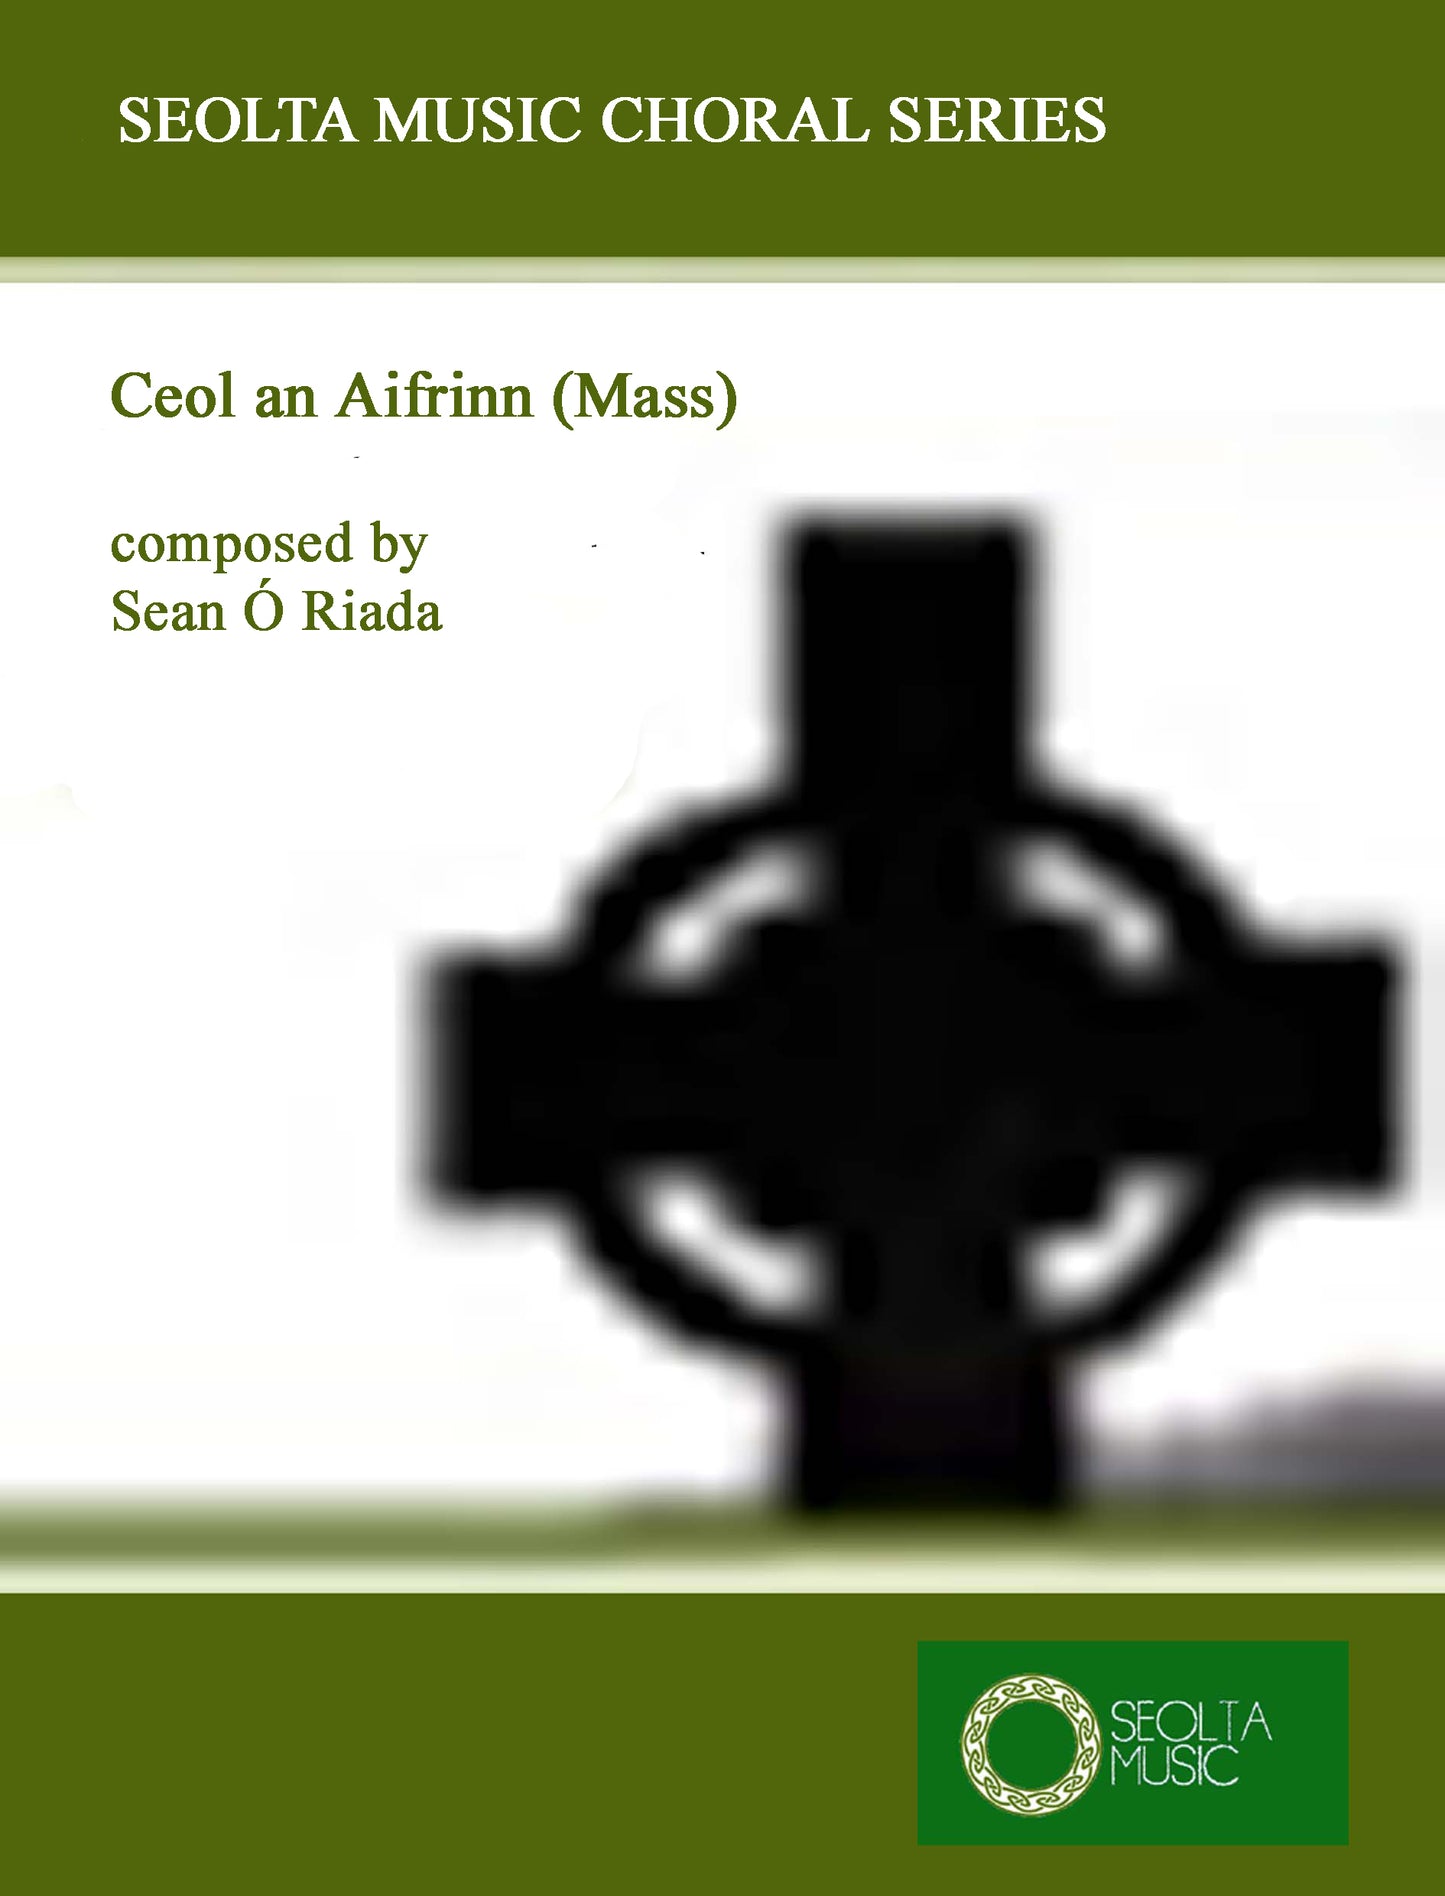 mass-by-sean-o-riada-ceol-an-aifrinn-sheet-music